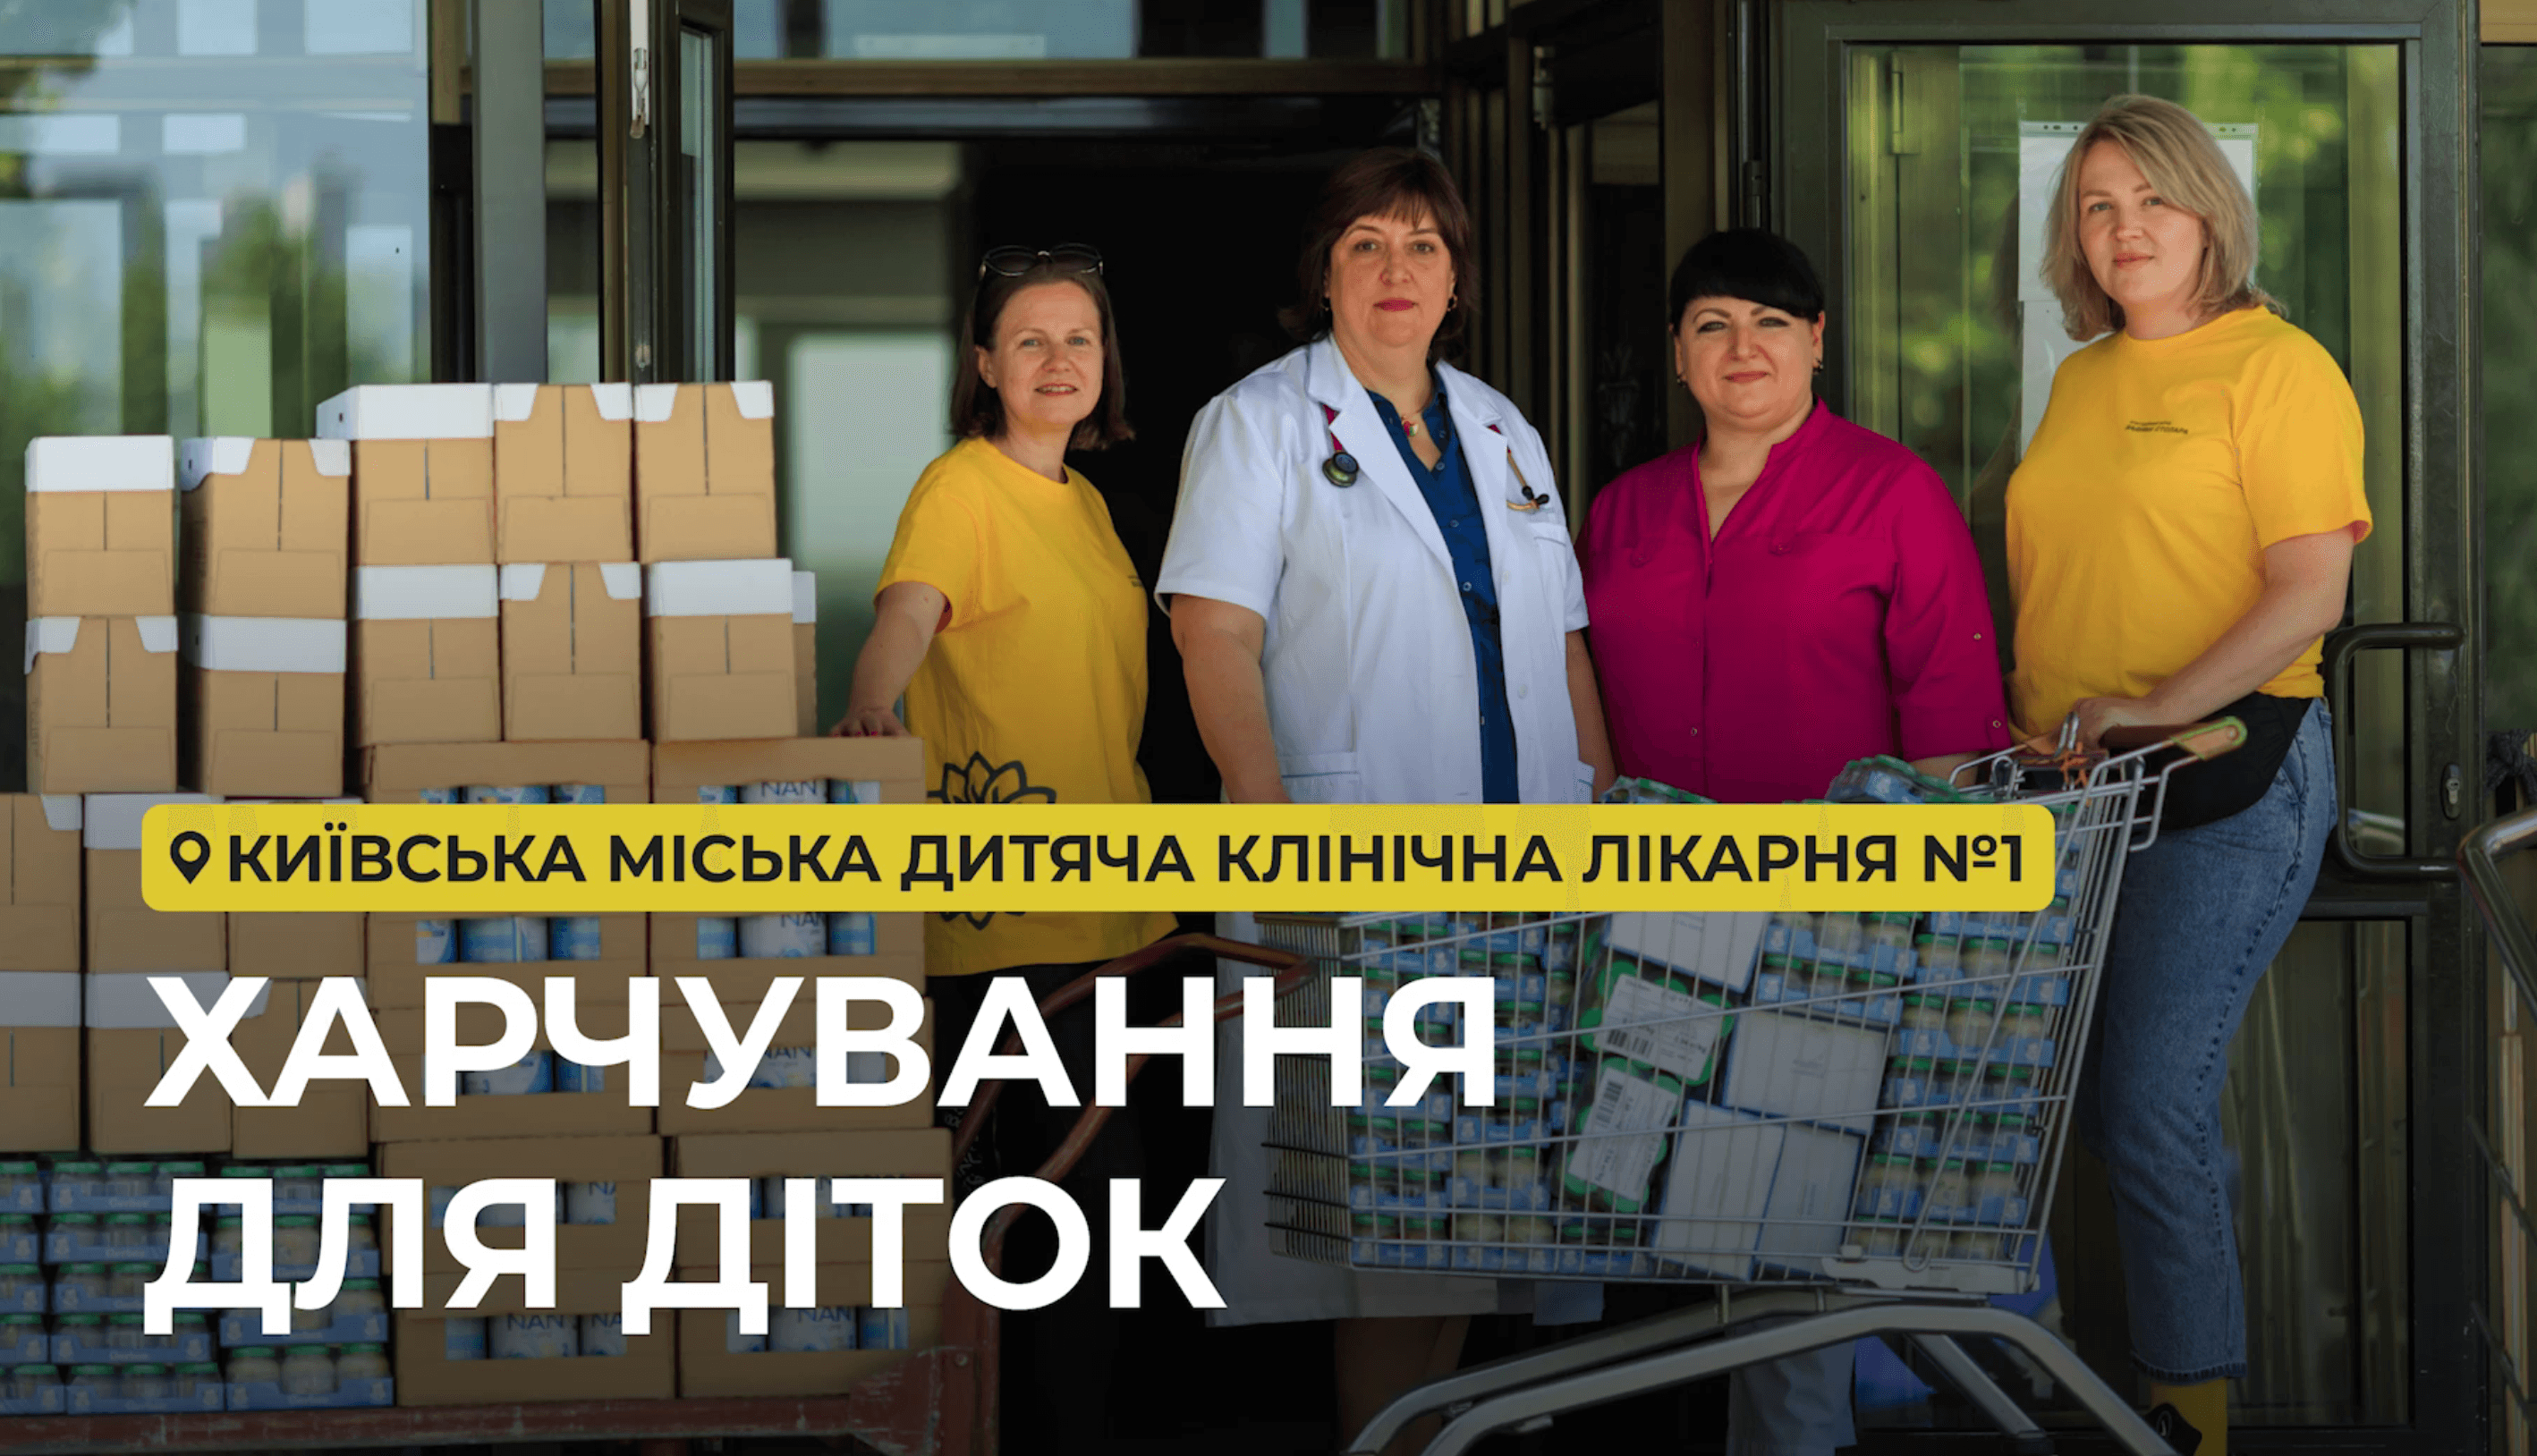 Відвідали Київську міську дитячу клінічну лікарню №1